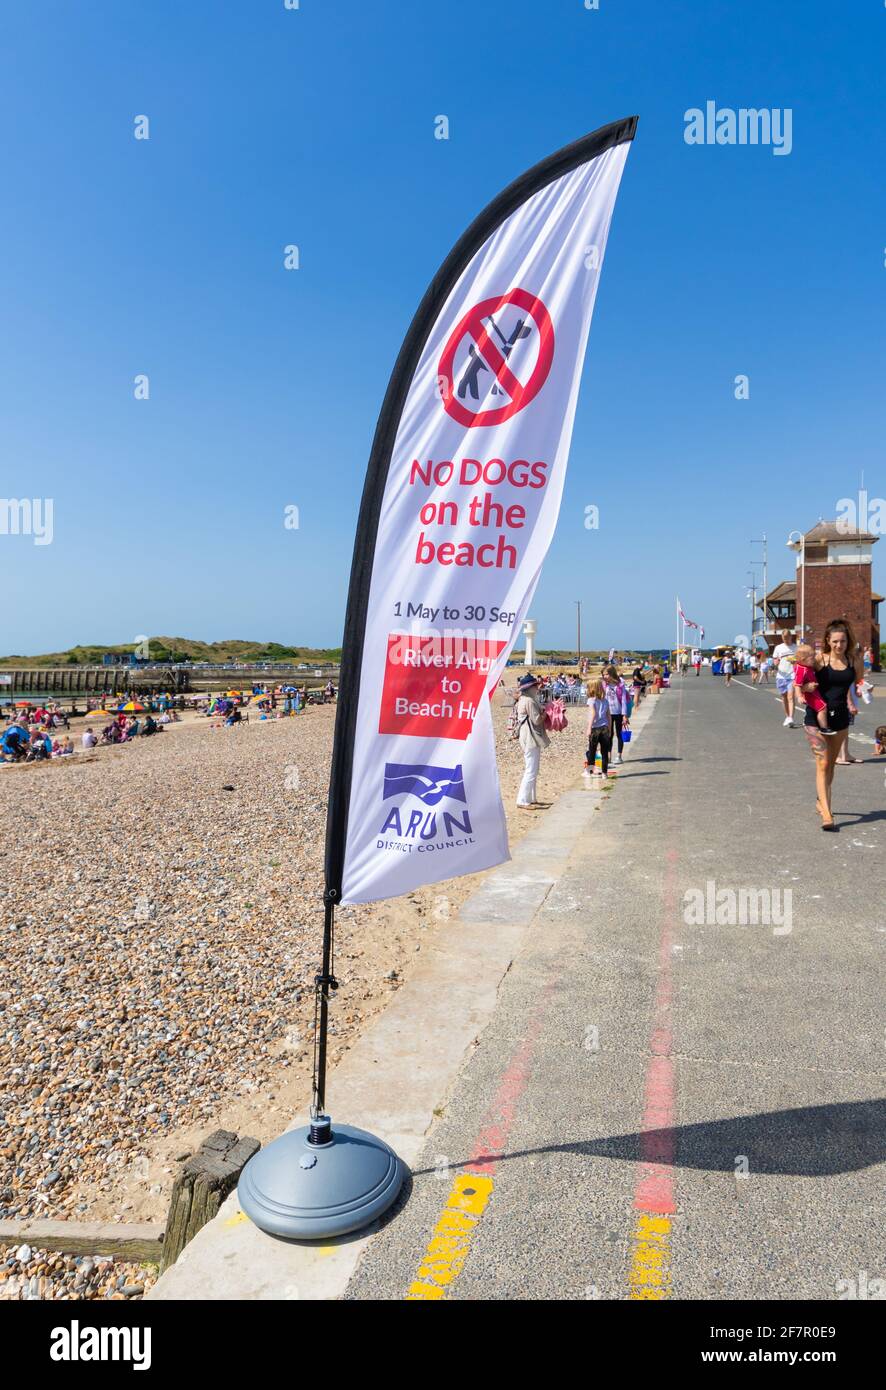 Una bandiera avvertimento che i cani non sono ammessi sulla spiaggia, sul lungomare in estate a Littlehampton, West Sussex, in Inghilterra, Regno Unito. Foto Stock